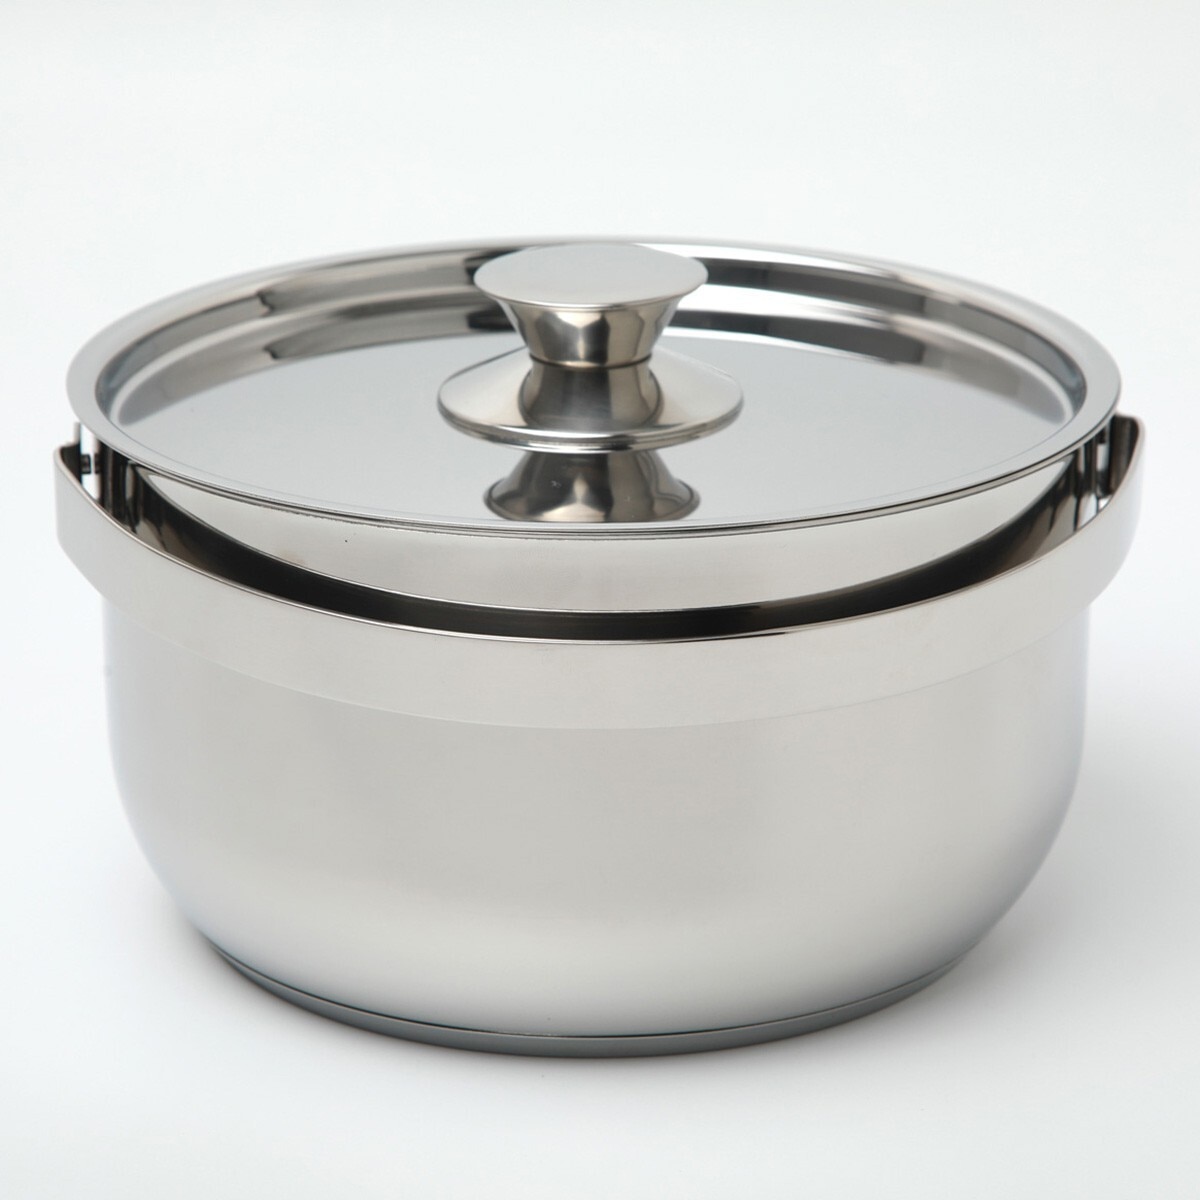 可收納湯鍋含蓋 6件組 含鍋體 X 3 + 鍋蓋 X 3